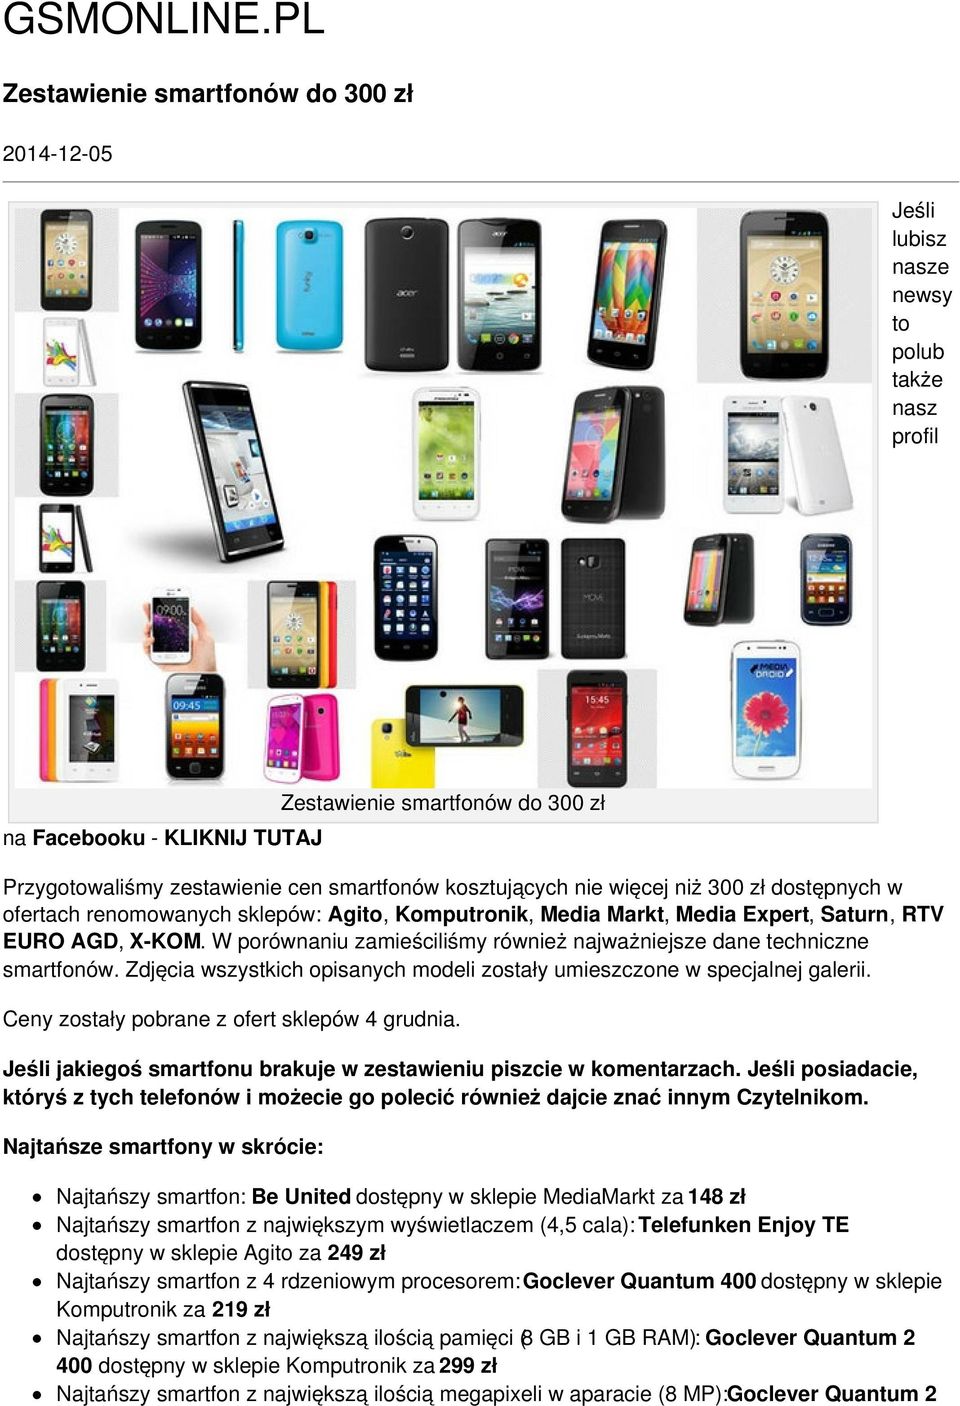 smartfonów kosztujących nie więcej niż 300 zł dostępnych w ofertach renomowanych sklepów: Agito, Komputronik, Media Markt, Media Expert, Saturn, RTV EURO AGD, X-KOM.